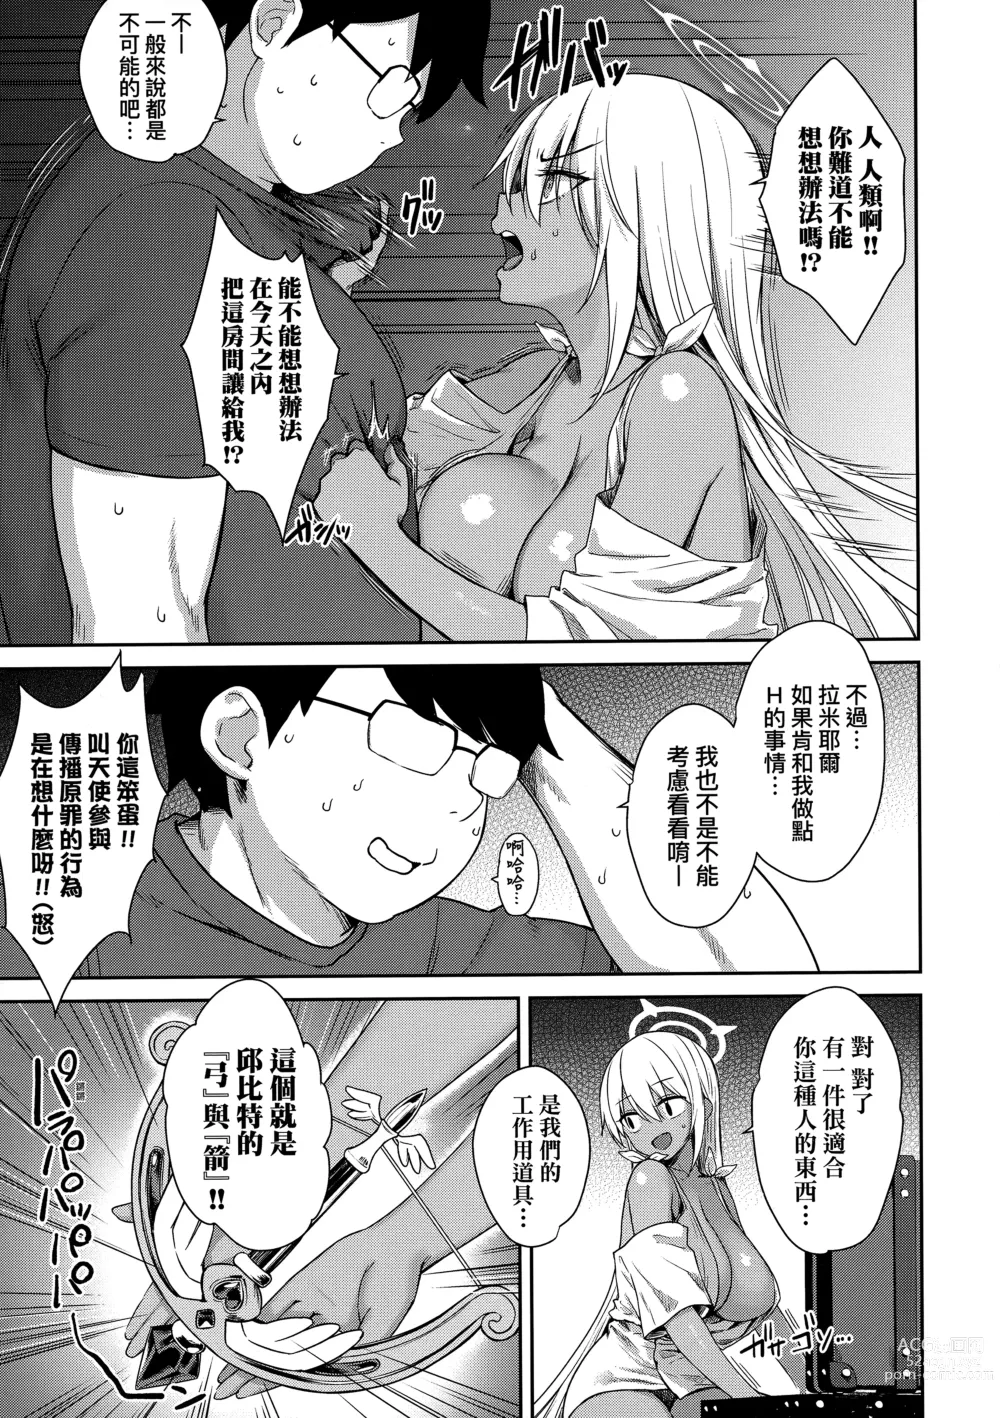 Page 182 of manga 鄰居家的傲嬌淫魔美眉 (decensored)